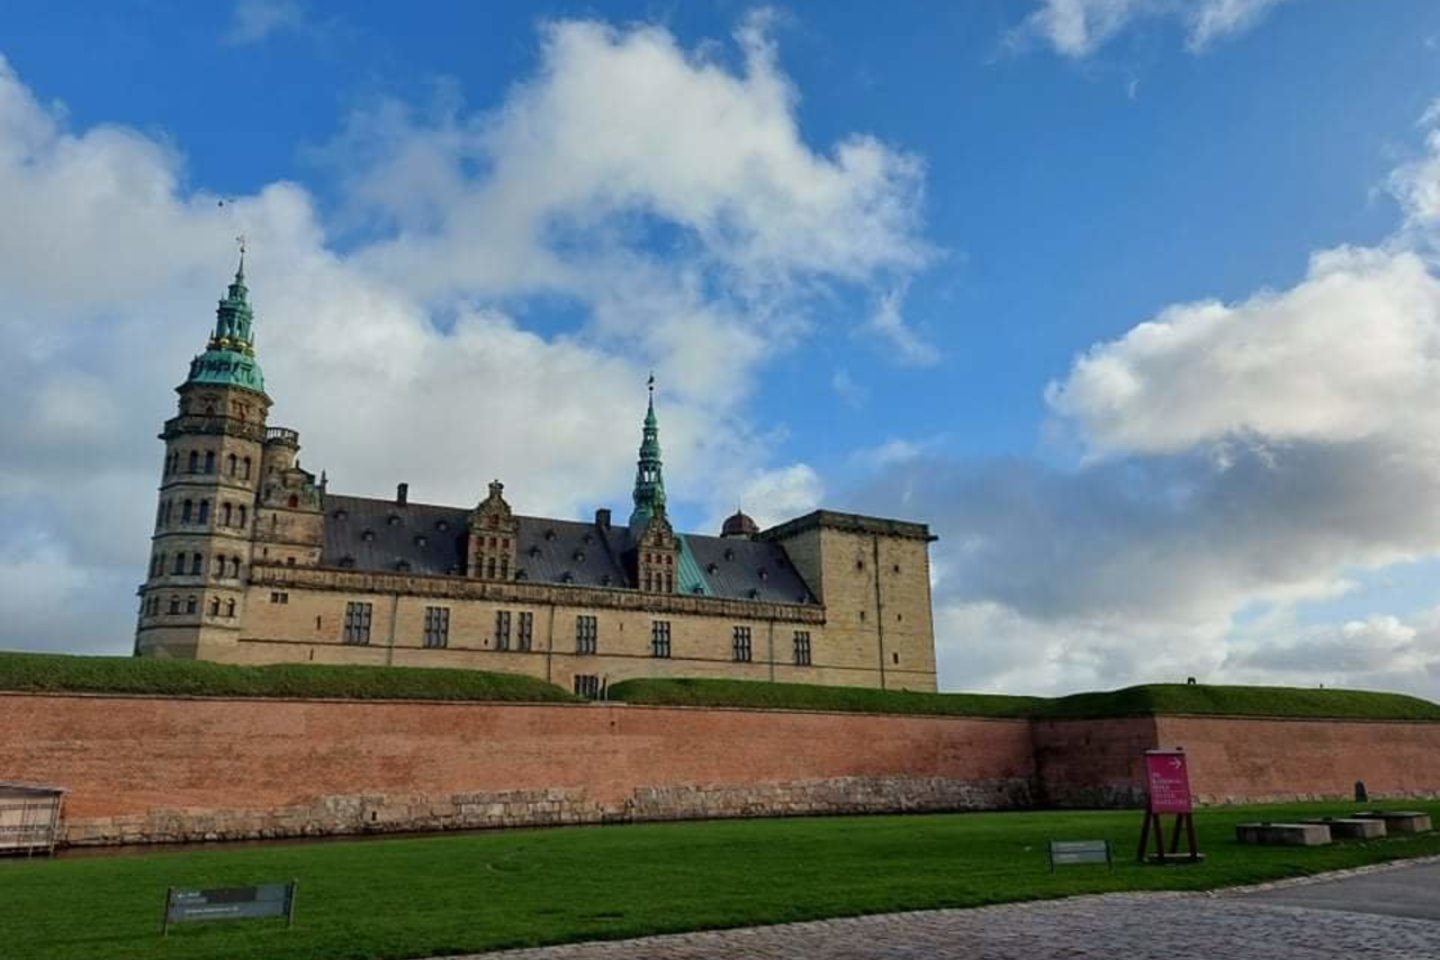 Vieni laimingiausių pasaulyje žmonių gyvena Danijoje! Puiki proga tuo įsitikinti – aplankyti vieną seniausių Europos sostinių.